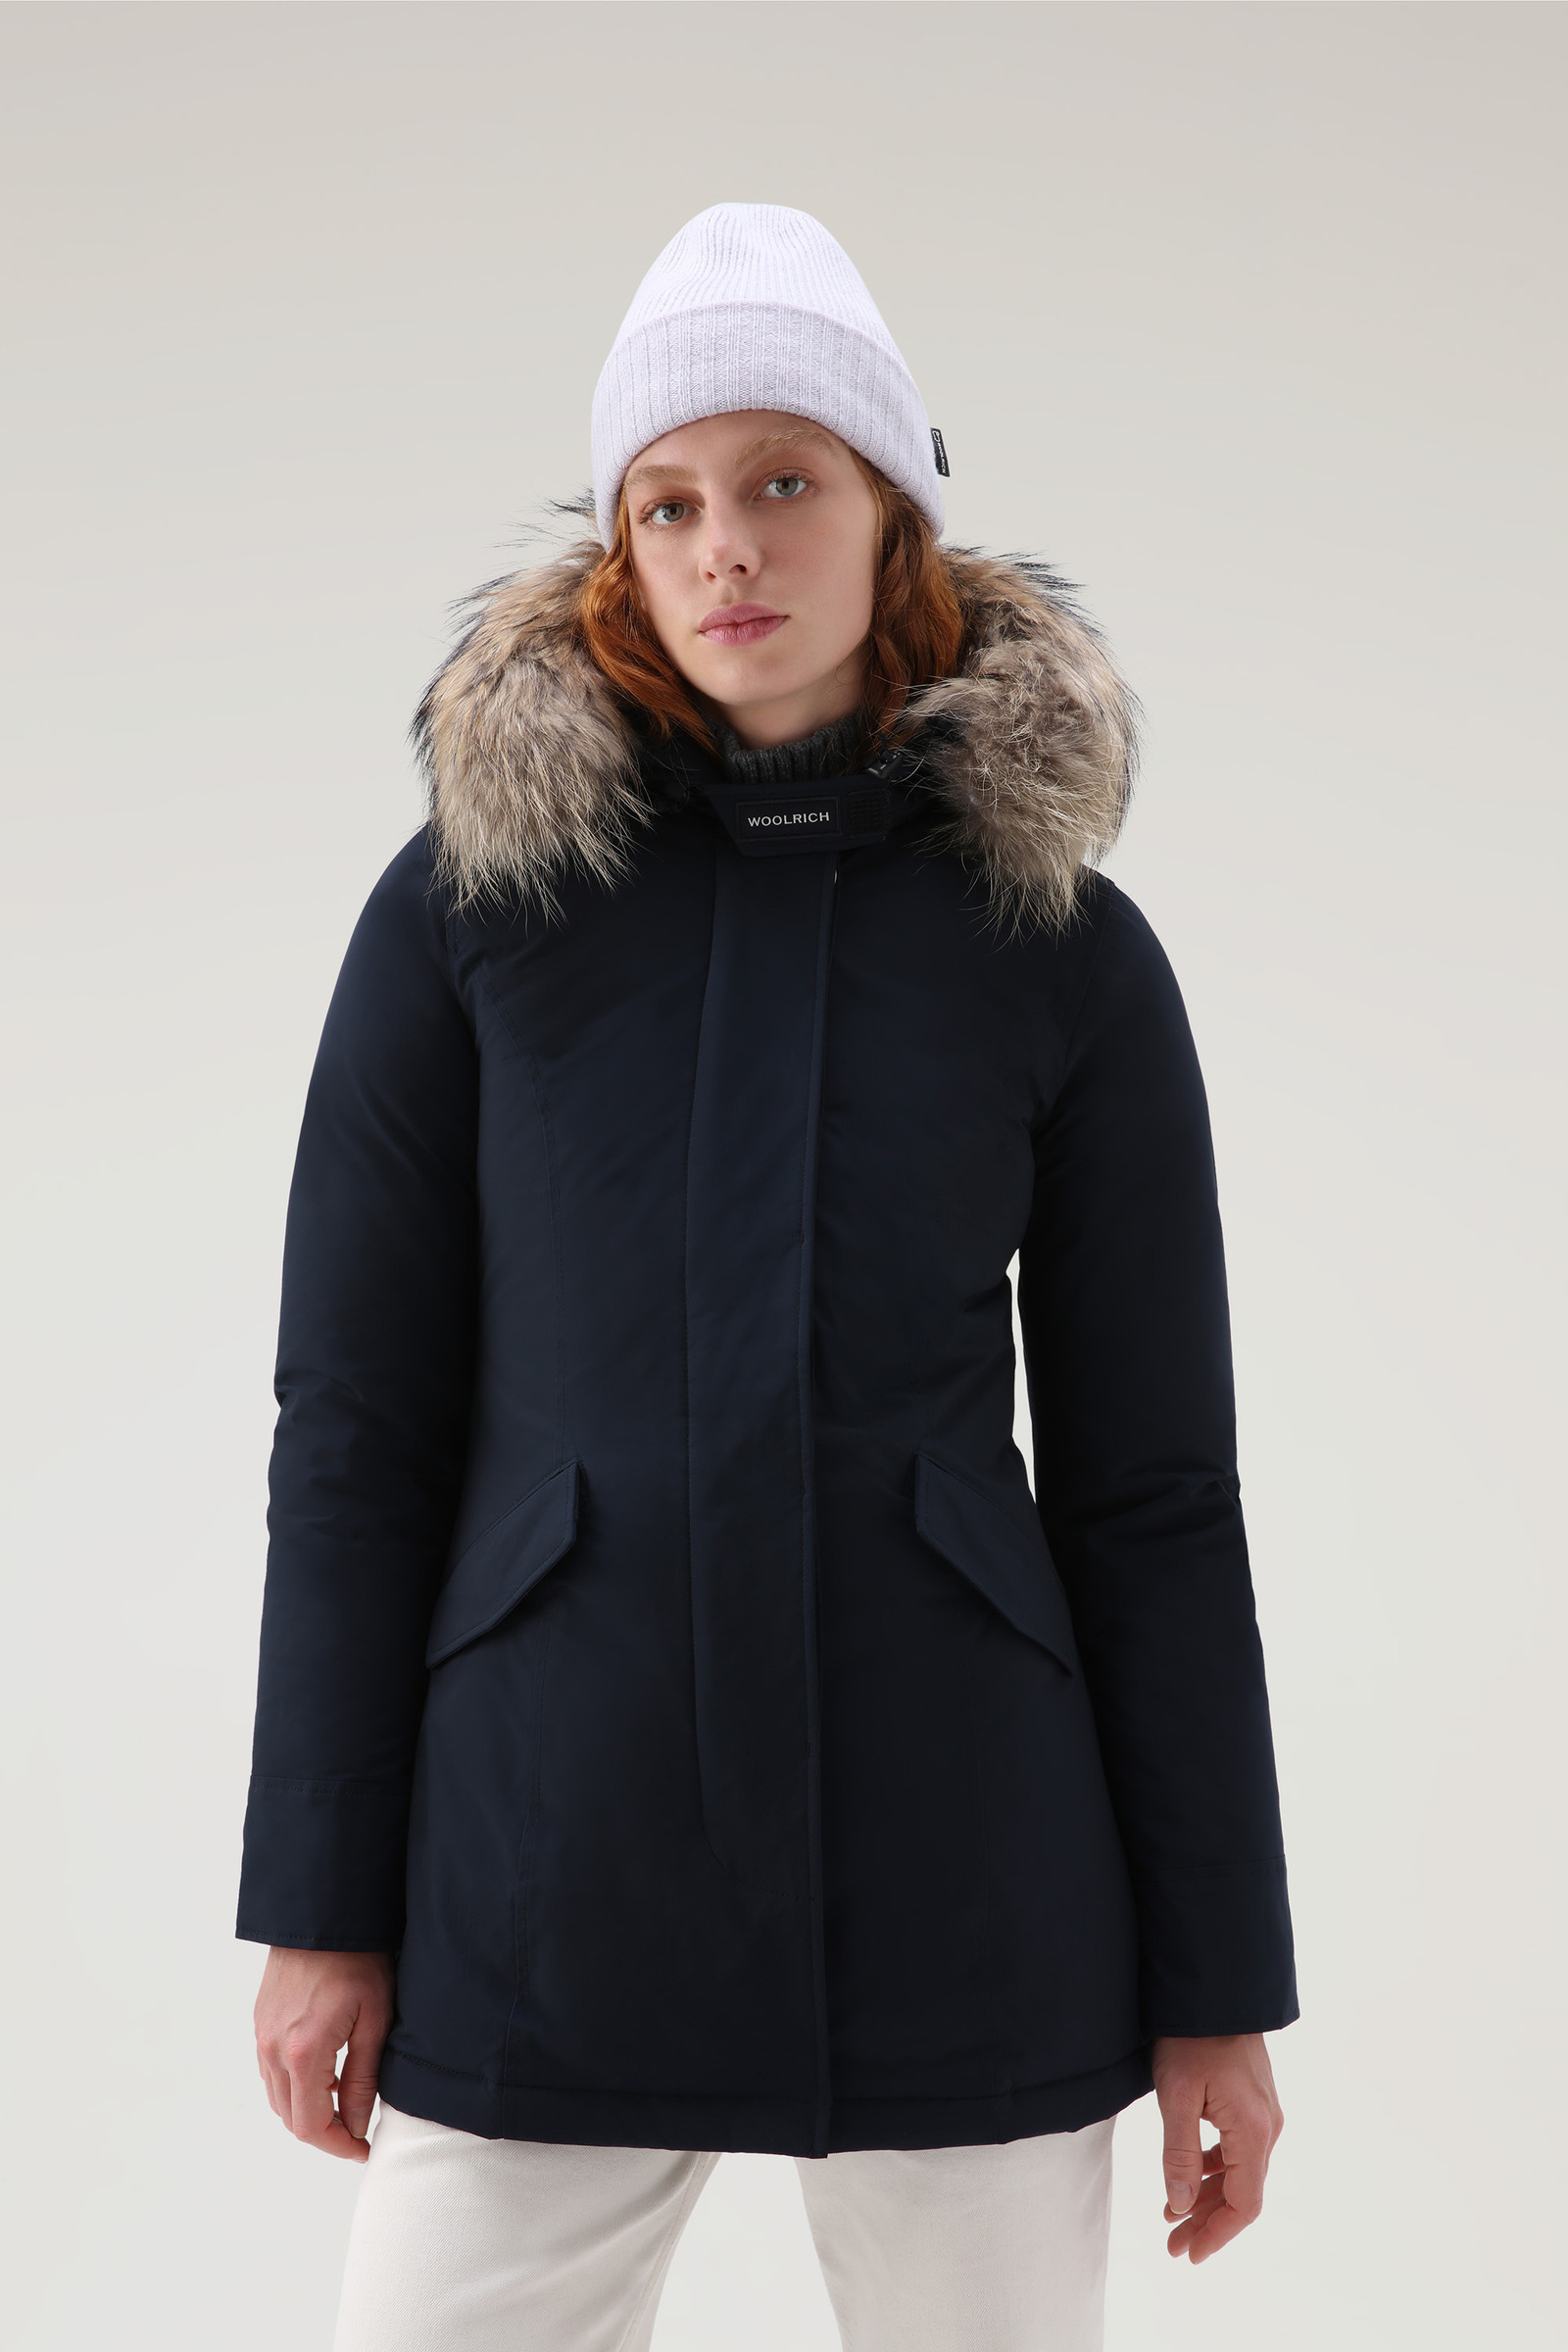 Women's Luxury Arctic Parka with Detachable Fur Blue | Woolrich HR